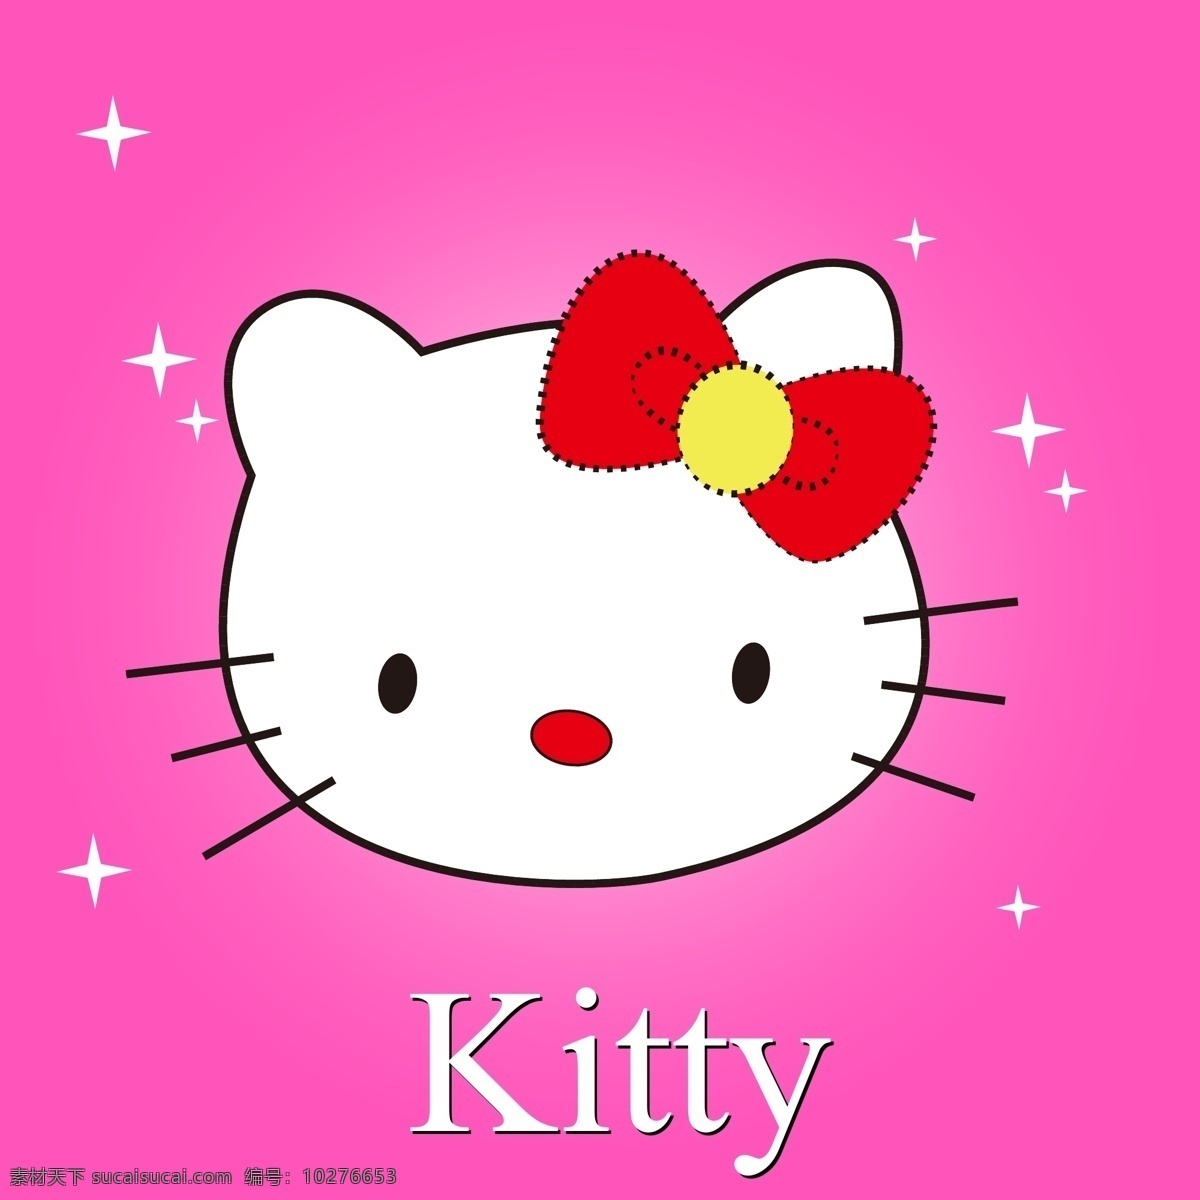 hello kitty kitty猫 红色 凯蒂猫 可爱小猫 其他矢量 矢量素材 小猫 可爱 矢量 模板下载 卡通 形象 矢量图 其他矢量图